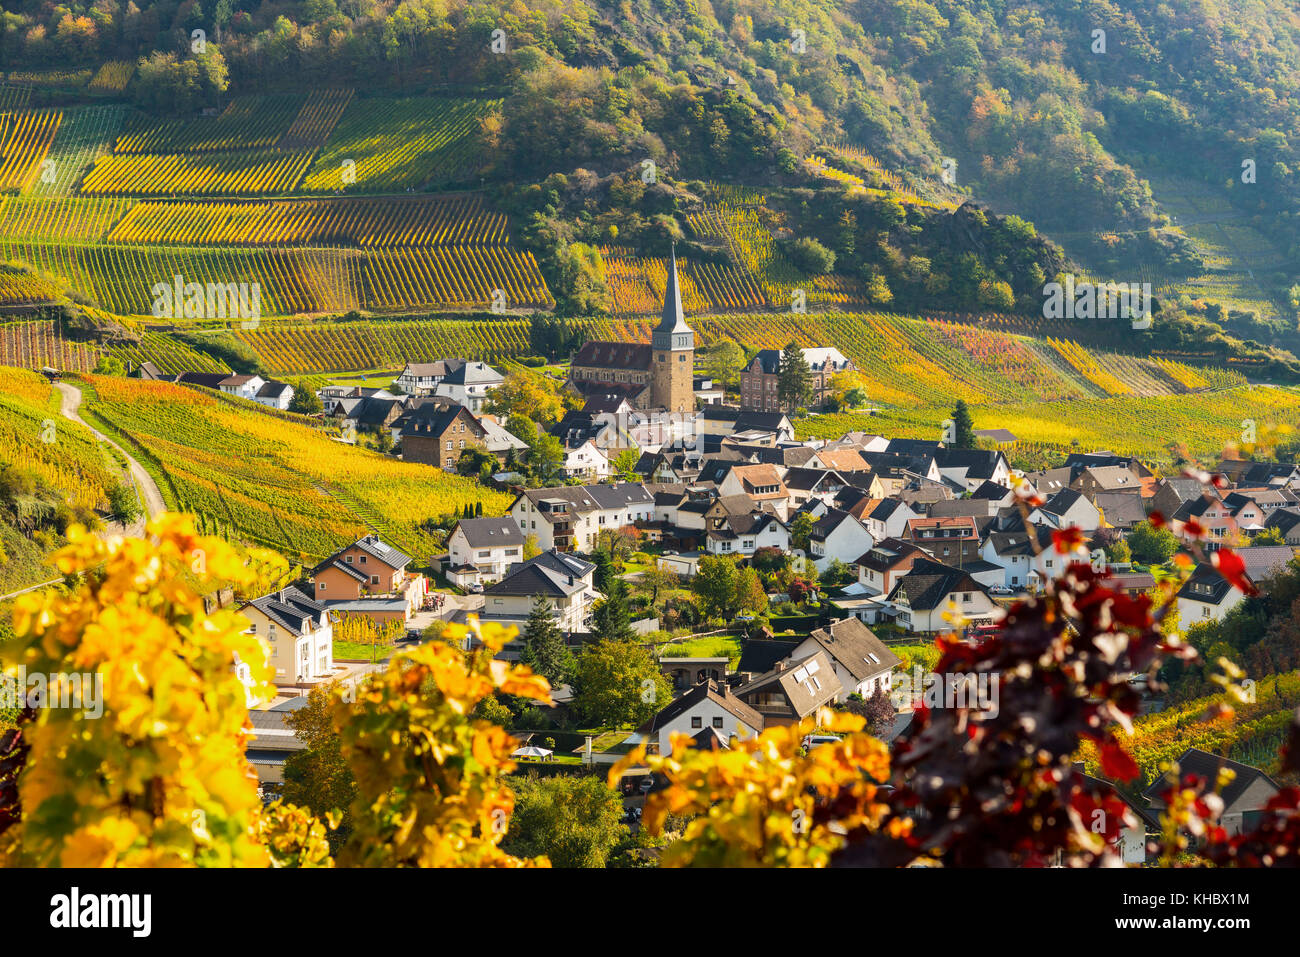 Viñedos en otoño, Mayschoß, valle de Ahr, zona de cultivo de vino tinto, Eifel, Renania-Palatinado, Alemania Foto de stock